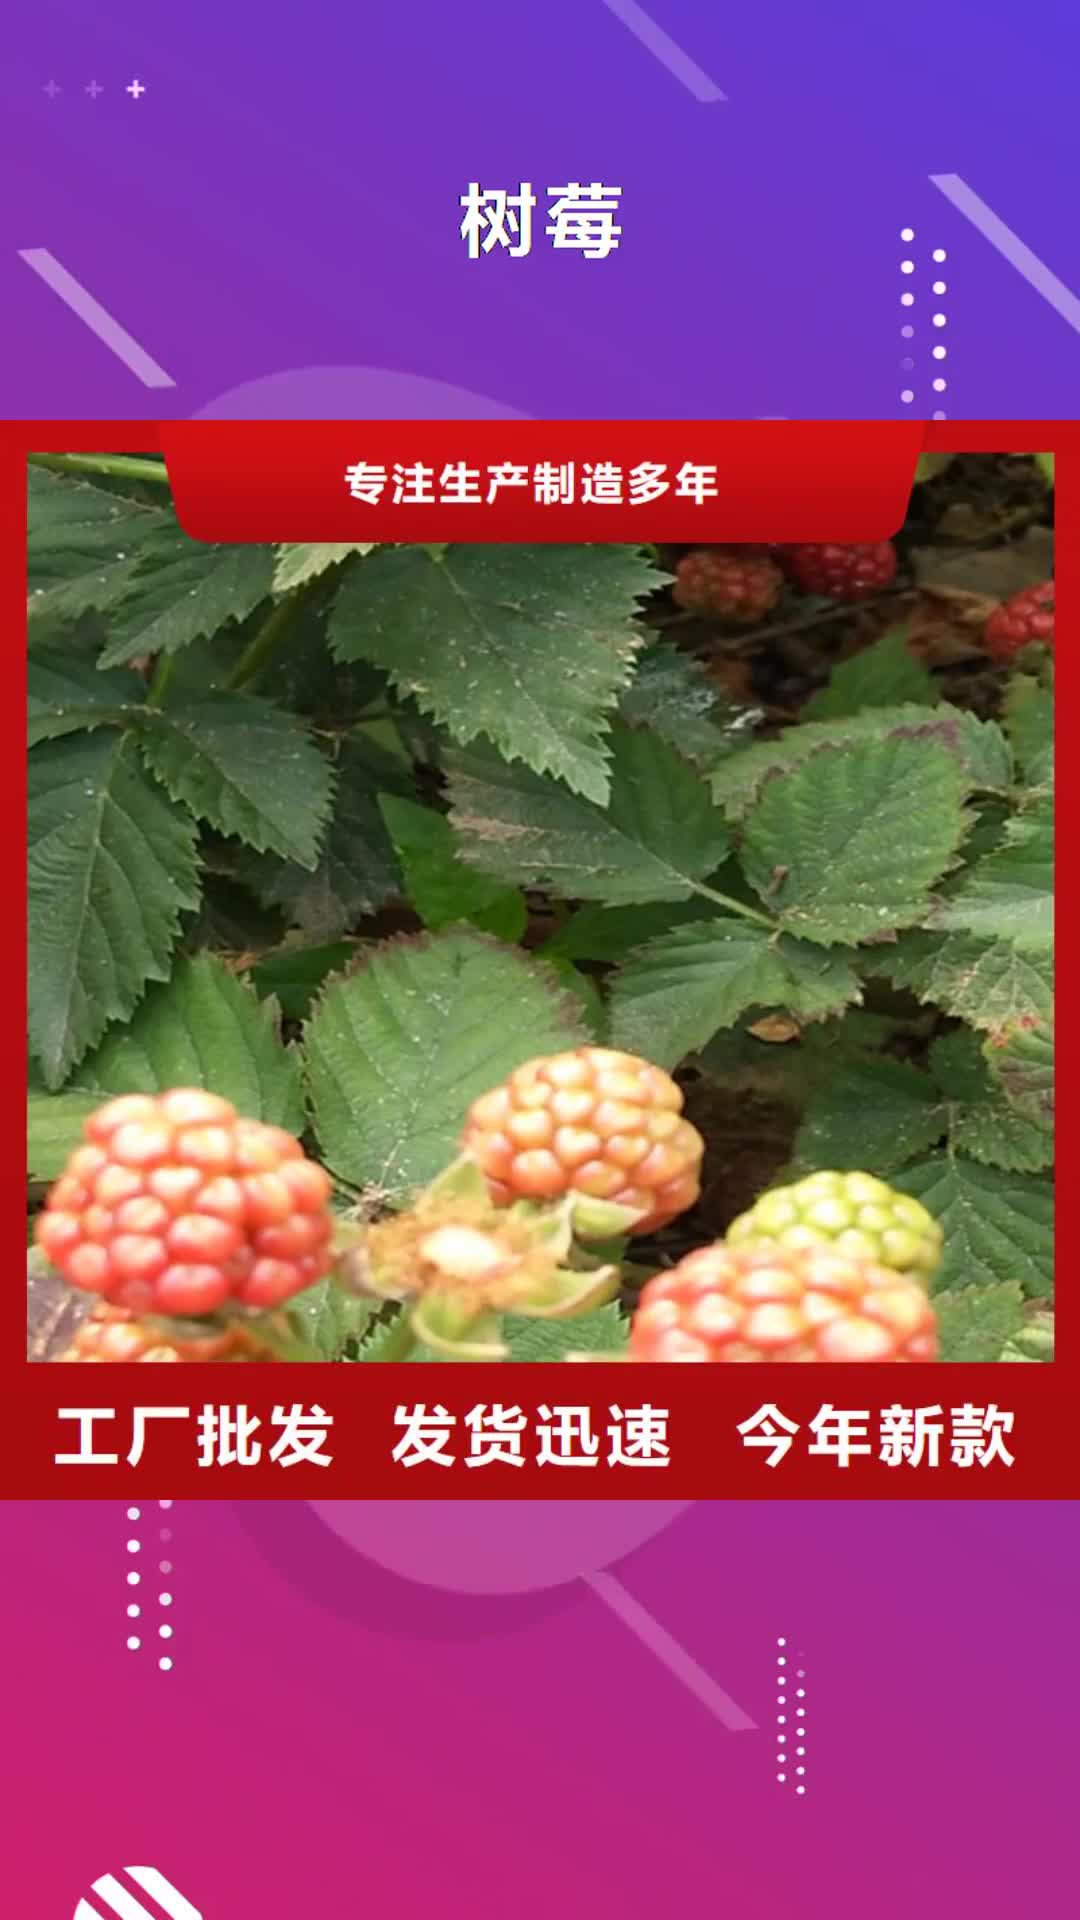 海南【树莓】樱桃苗细节展示